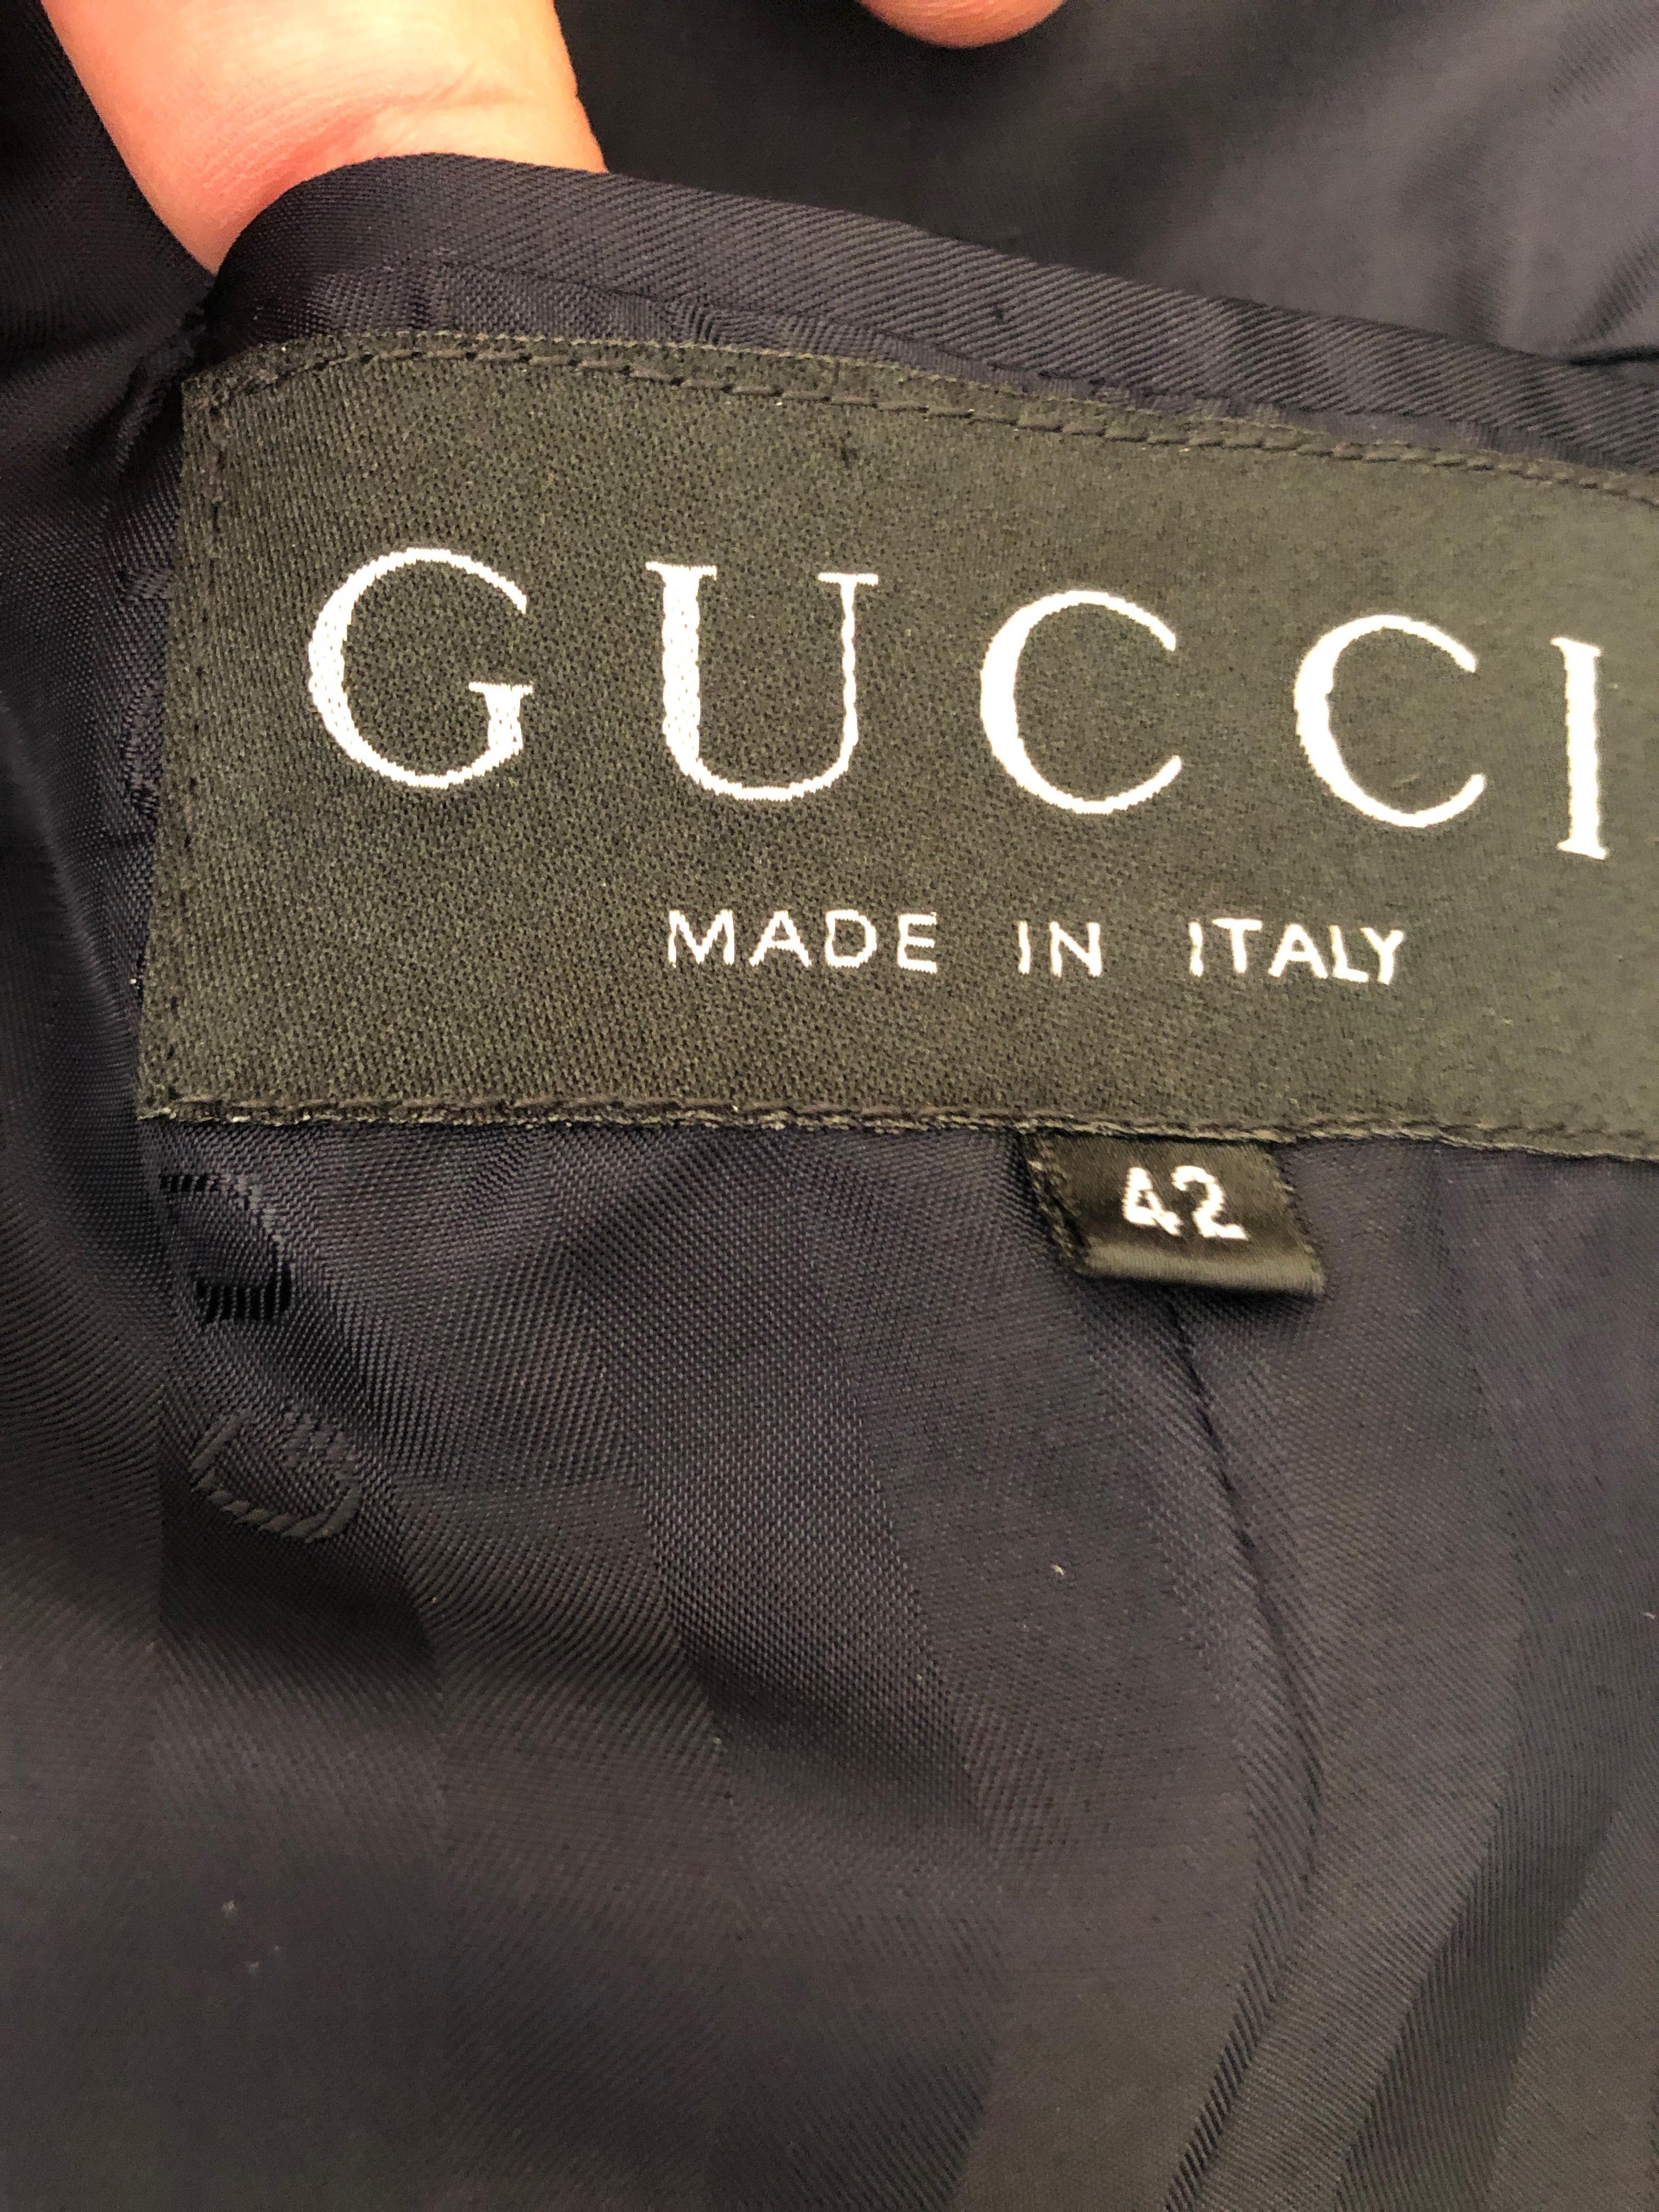 Gucci Tom Ford Fall 1996 Blue Velvet Peak Lapel Tuxedo  Size 42  Pristine For Sale 4